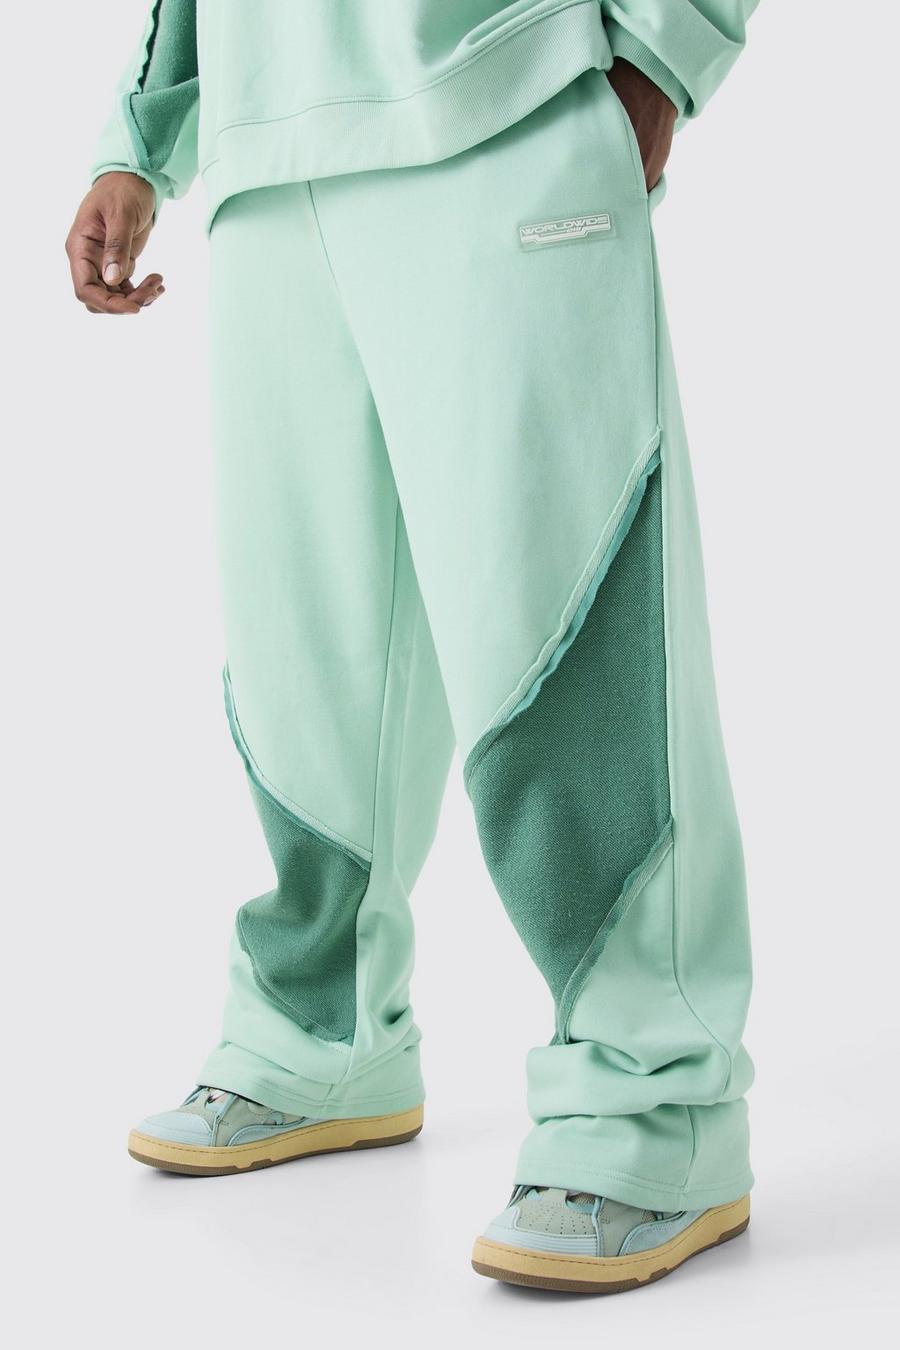 Pantalón deportivo Plus holgado con panel y bajo sin acabar, Mint